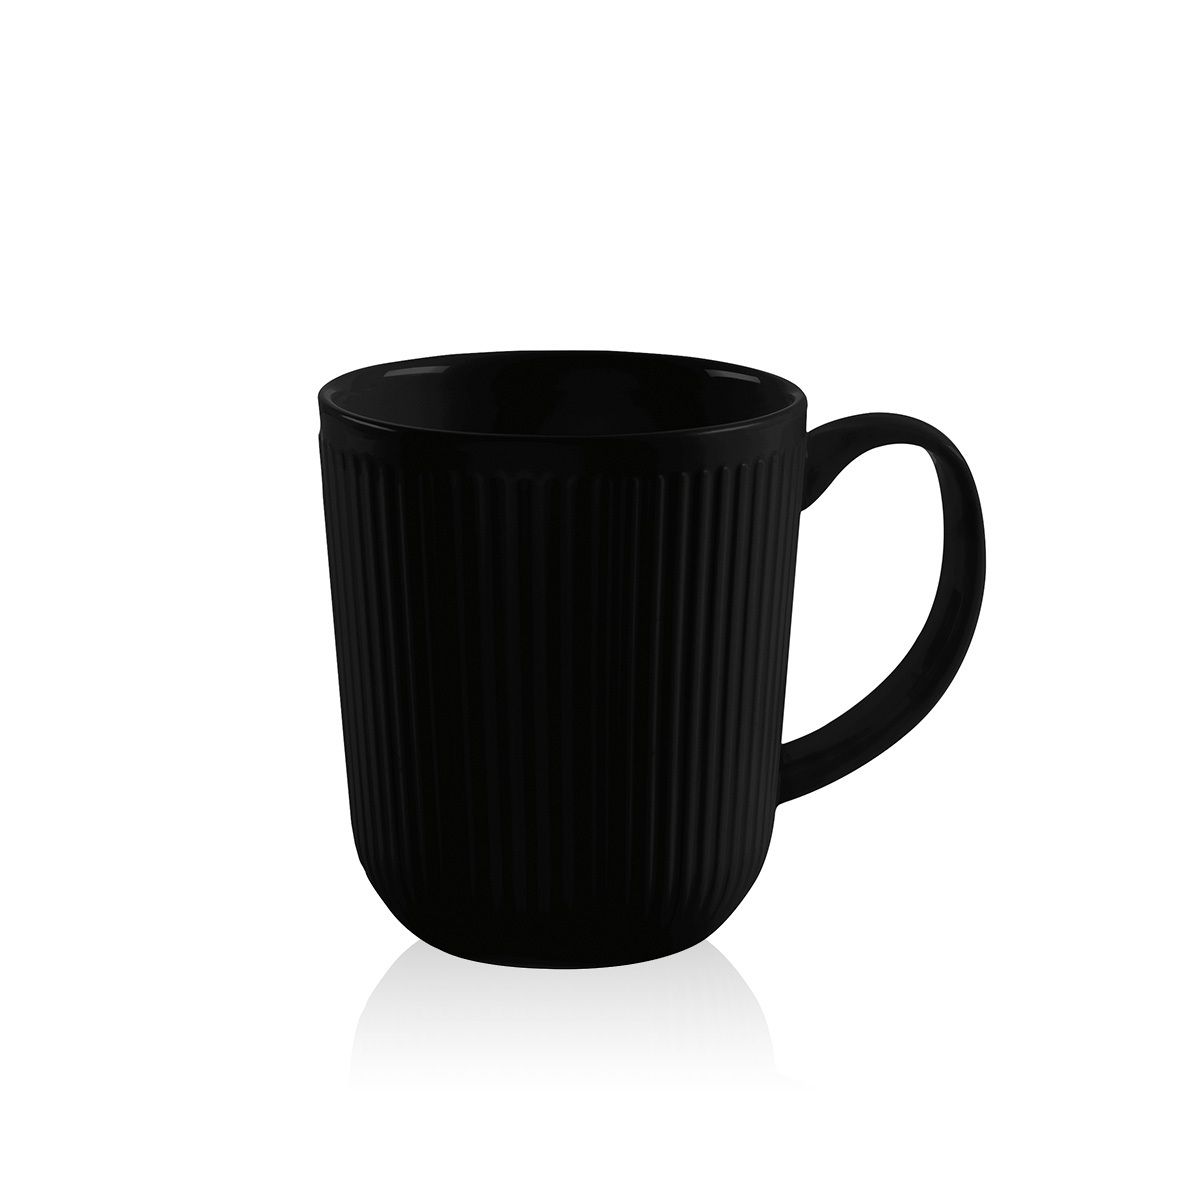 Bodum Douro Coffee Mug Porcelana Black Matt, 2 PC.